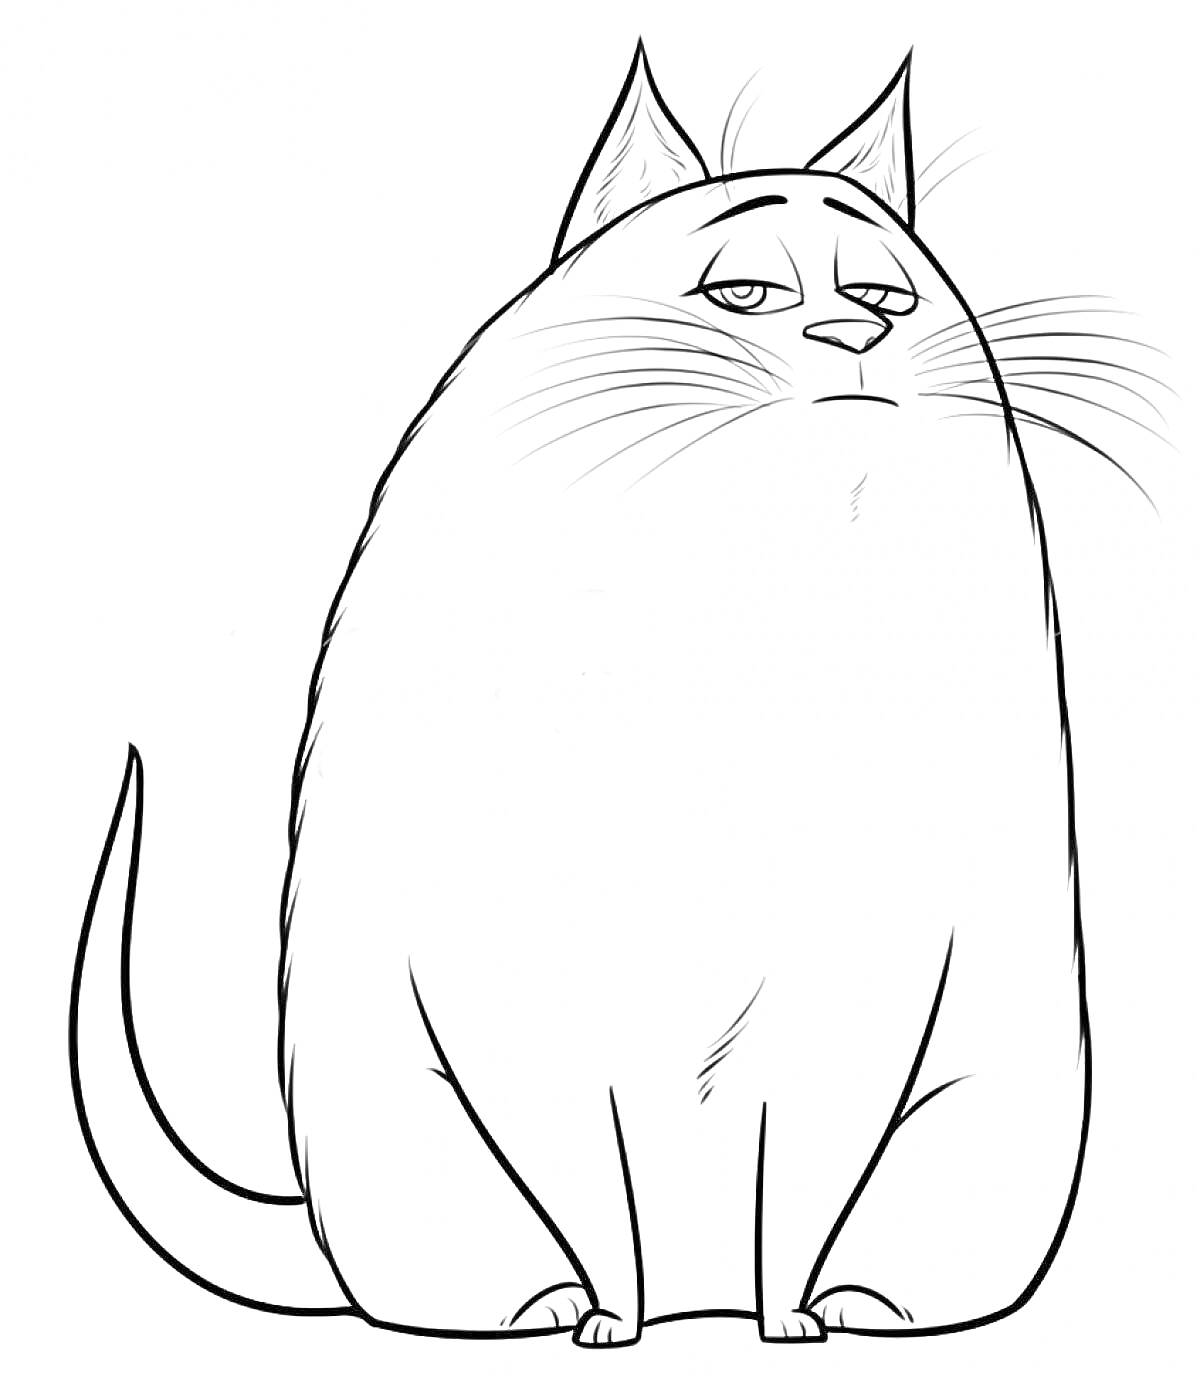 Толстая, печальная кошка из мультфильма 